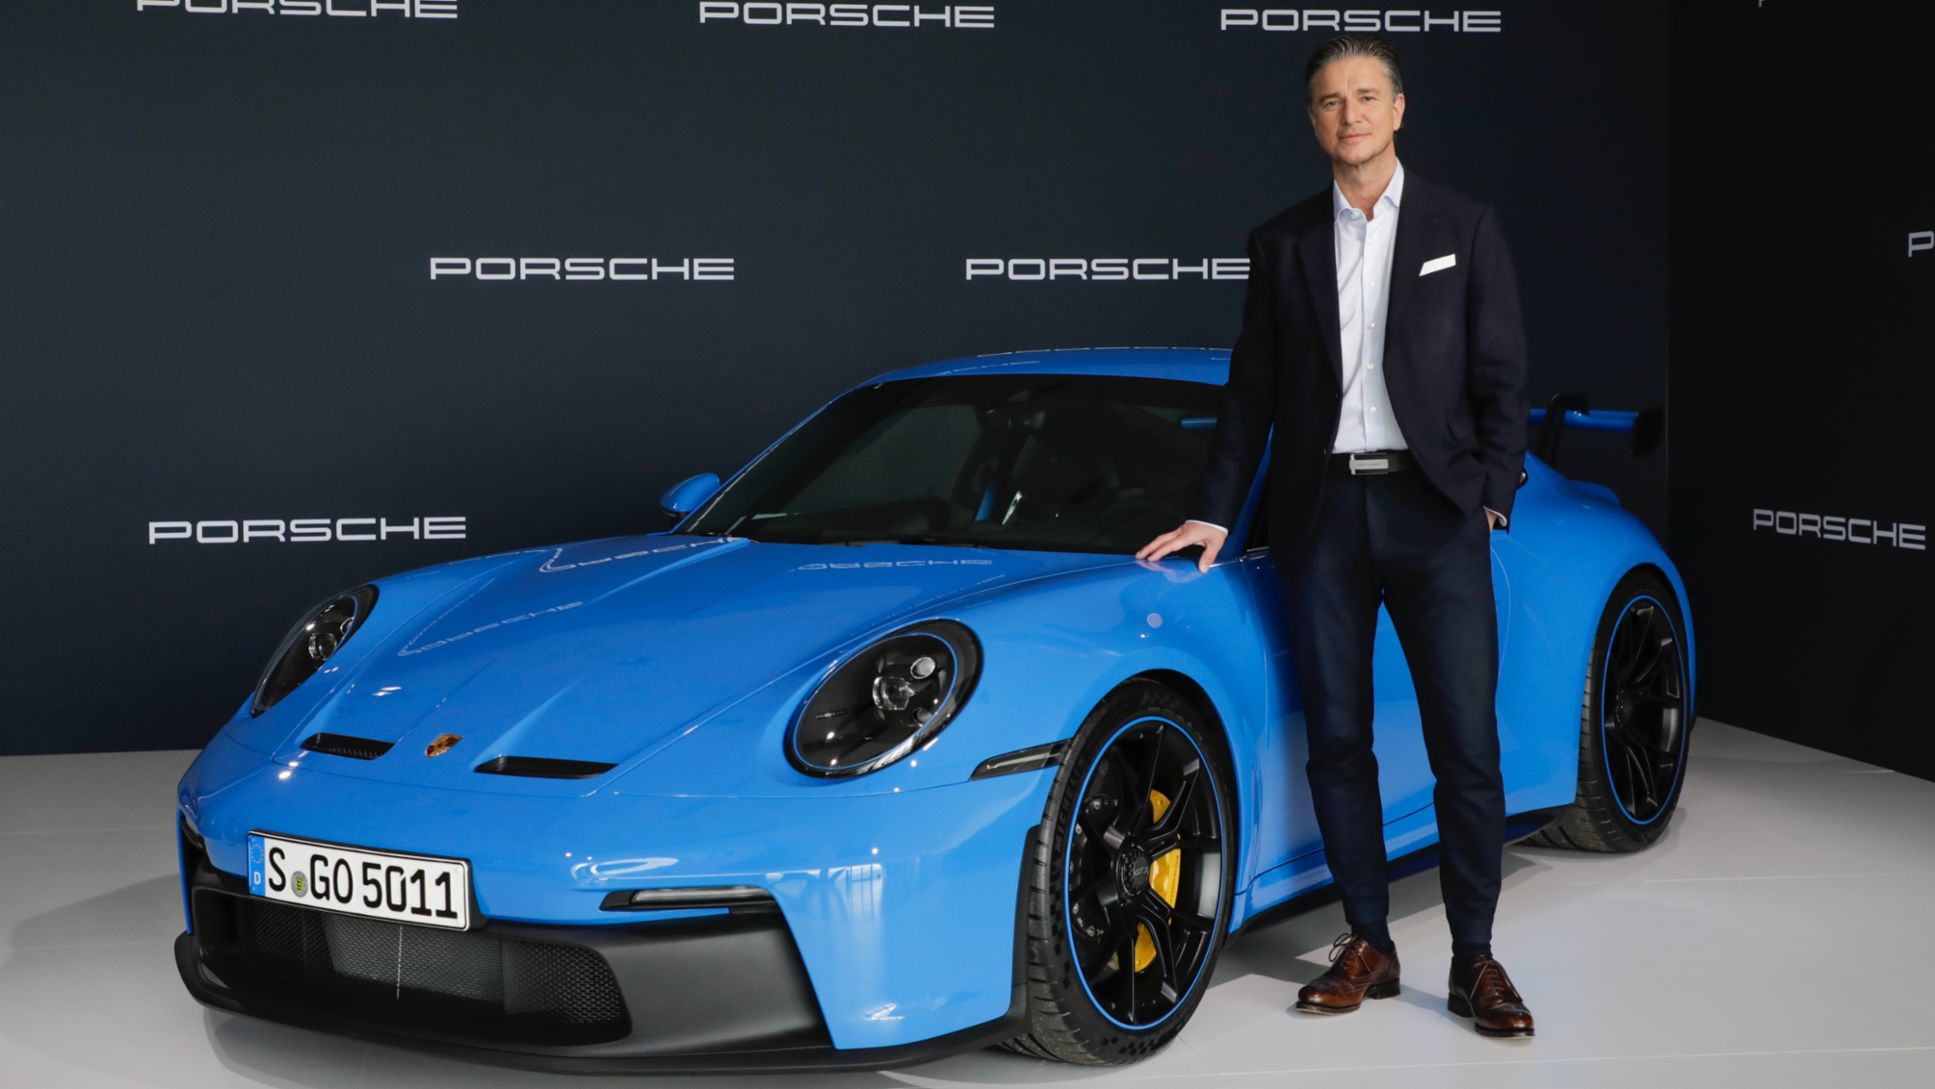 Lutz Meschke, Vicepresidente y Miembro del Consejo Directivo de Porsche AG responsable de Finanzas y Tecnologías de la Información de Dr. Ing. h.c. F. Porsche AG, conferencia de prensa anual, 2021, Porsche AG